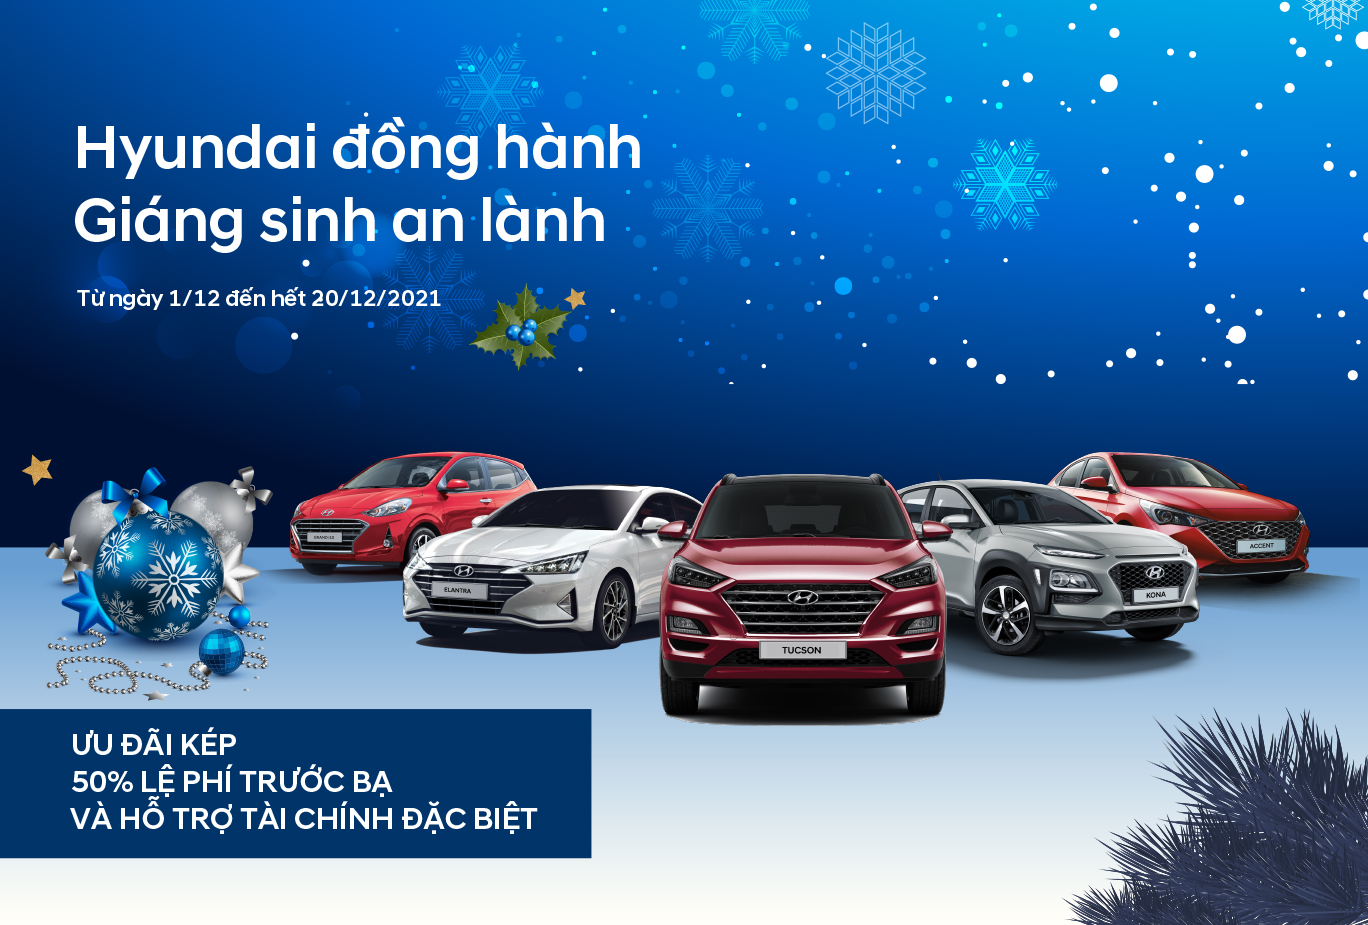 Hyundai Bình Dương triển khai chương trình ưu đãi tháng 12 trên toàn quốc “Hyundai đồng hành - Giáng sinh an lành”